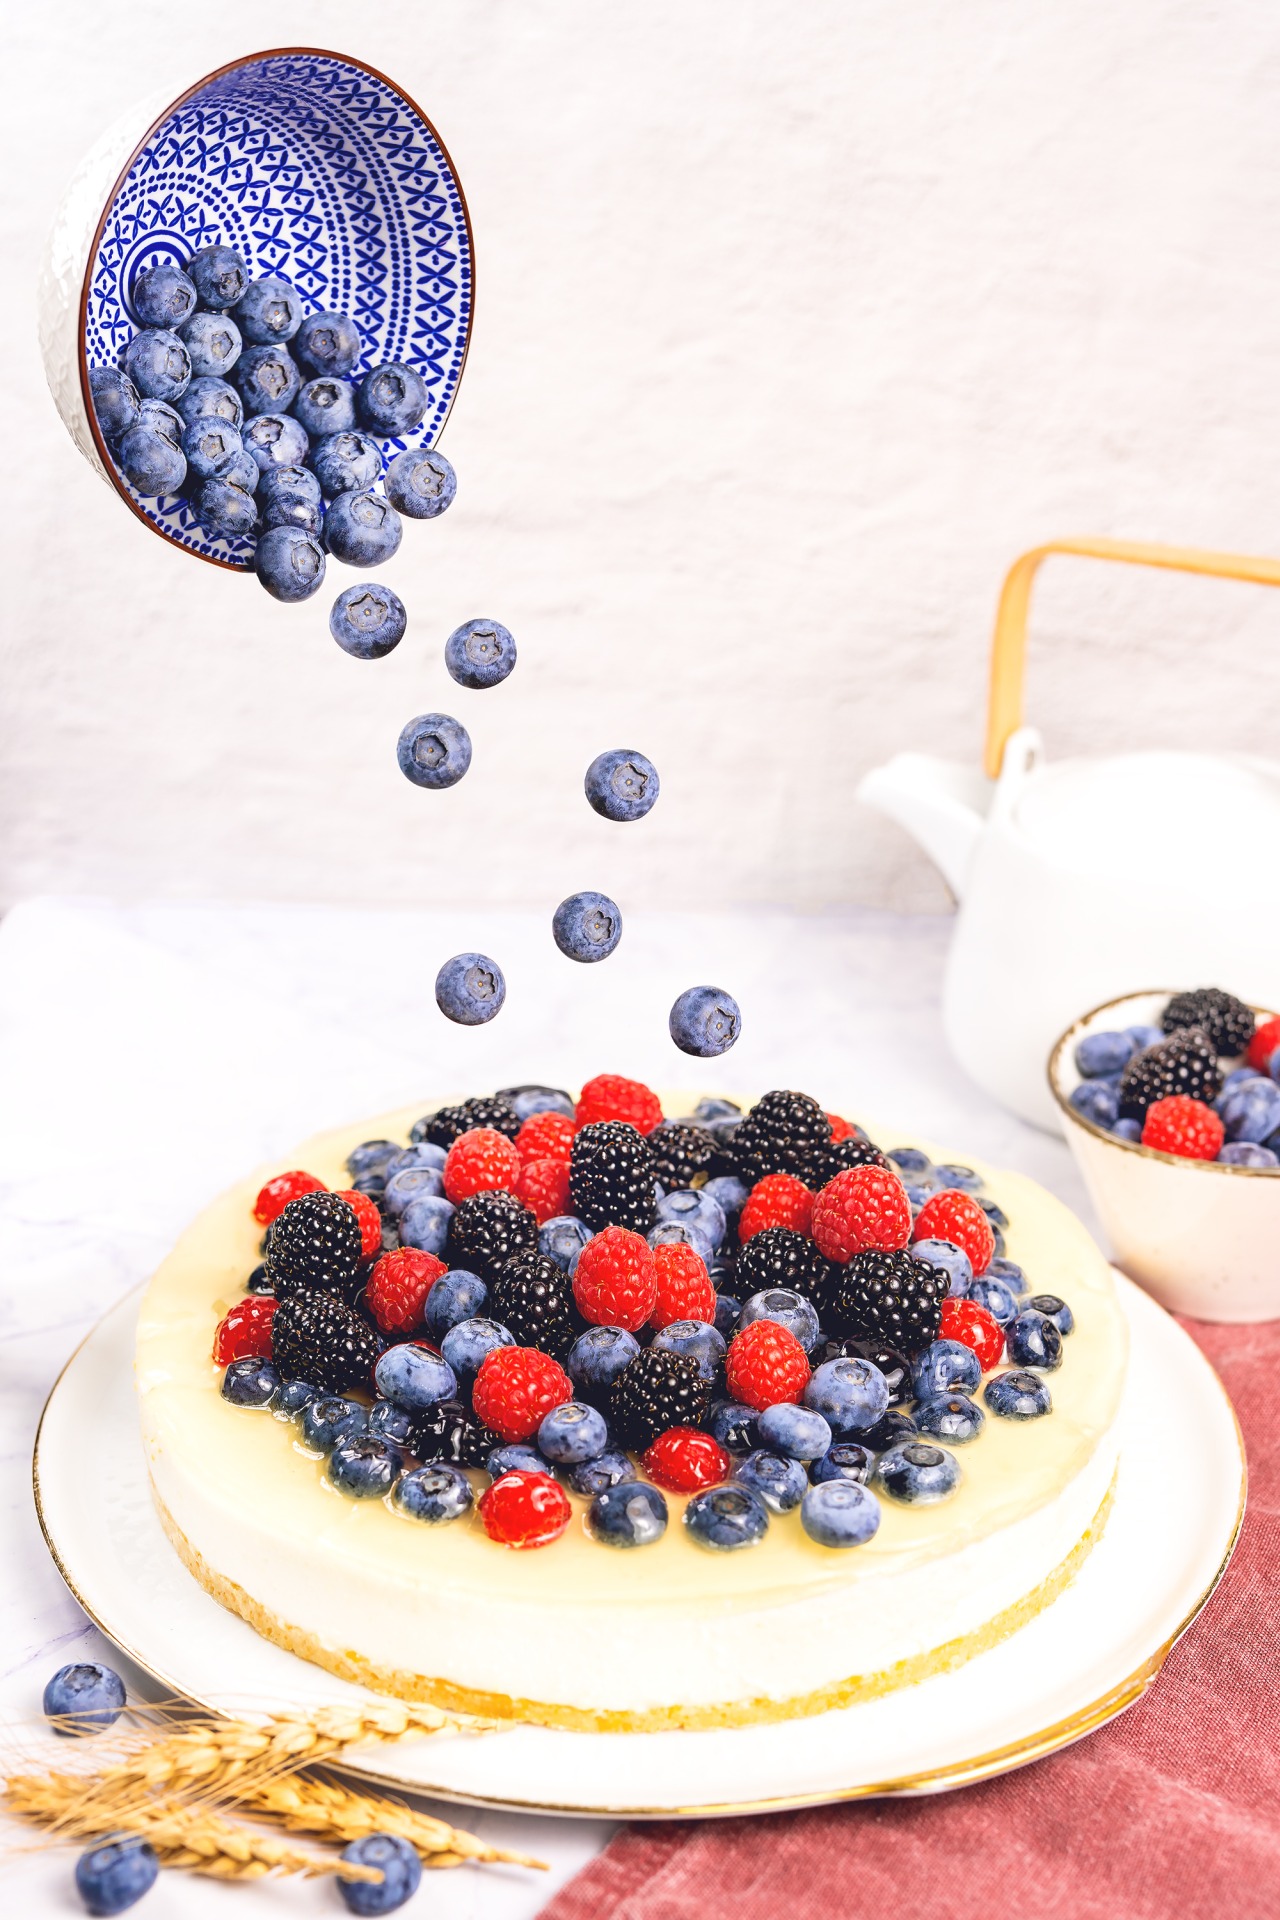 Blaubeeren fallen aus einer ausgekippten Schale, die sich über der Torte befindet, auf die Joghurt-Beeren-Torte hinauf - Foodfotograf